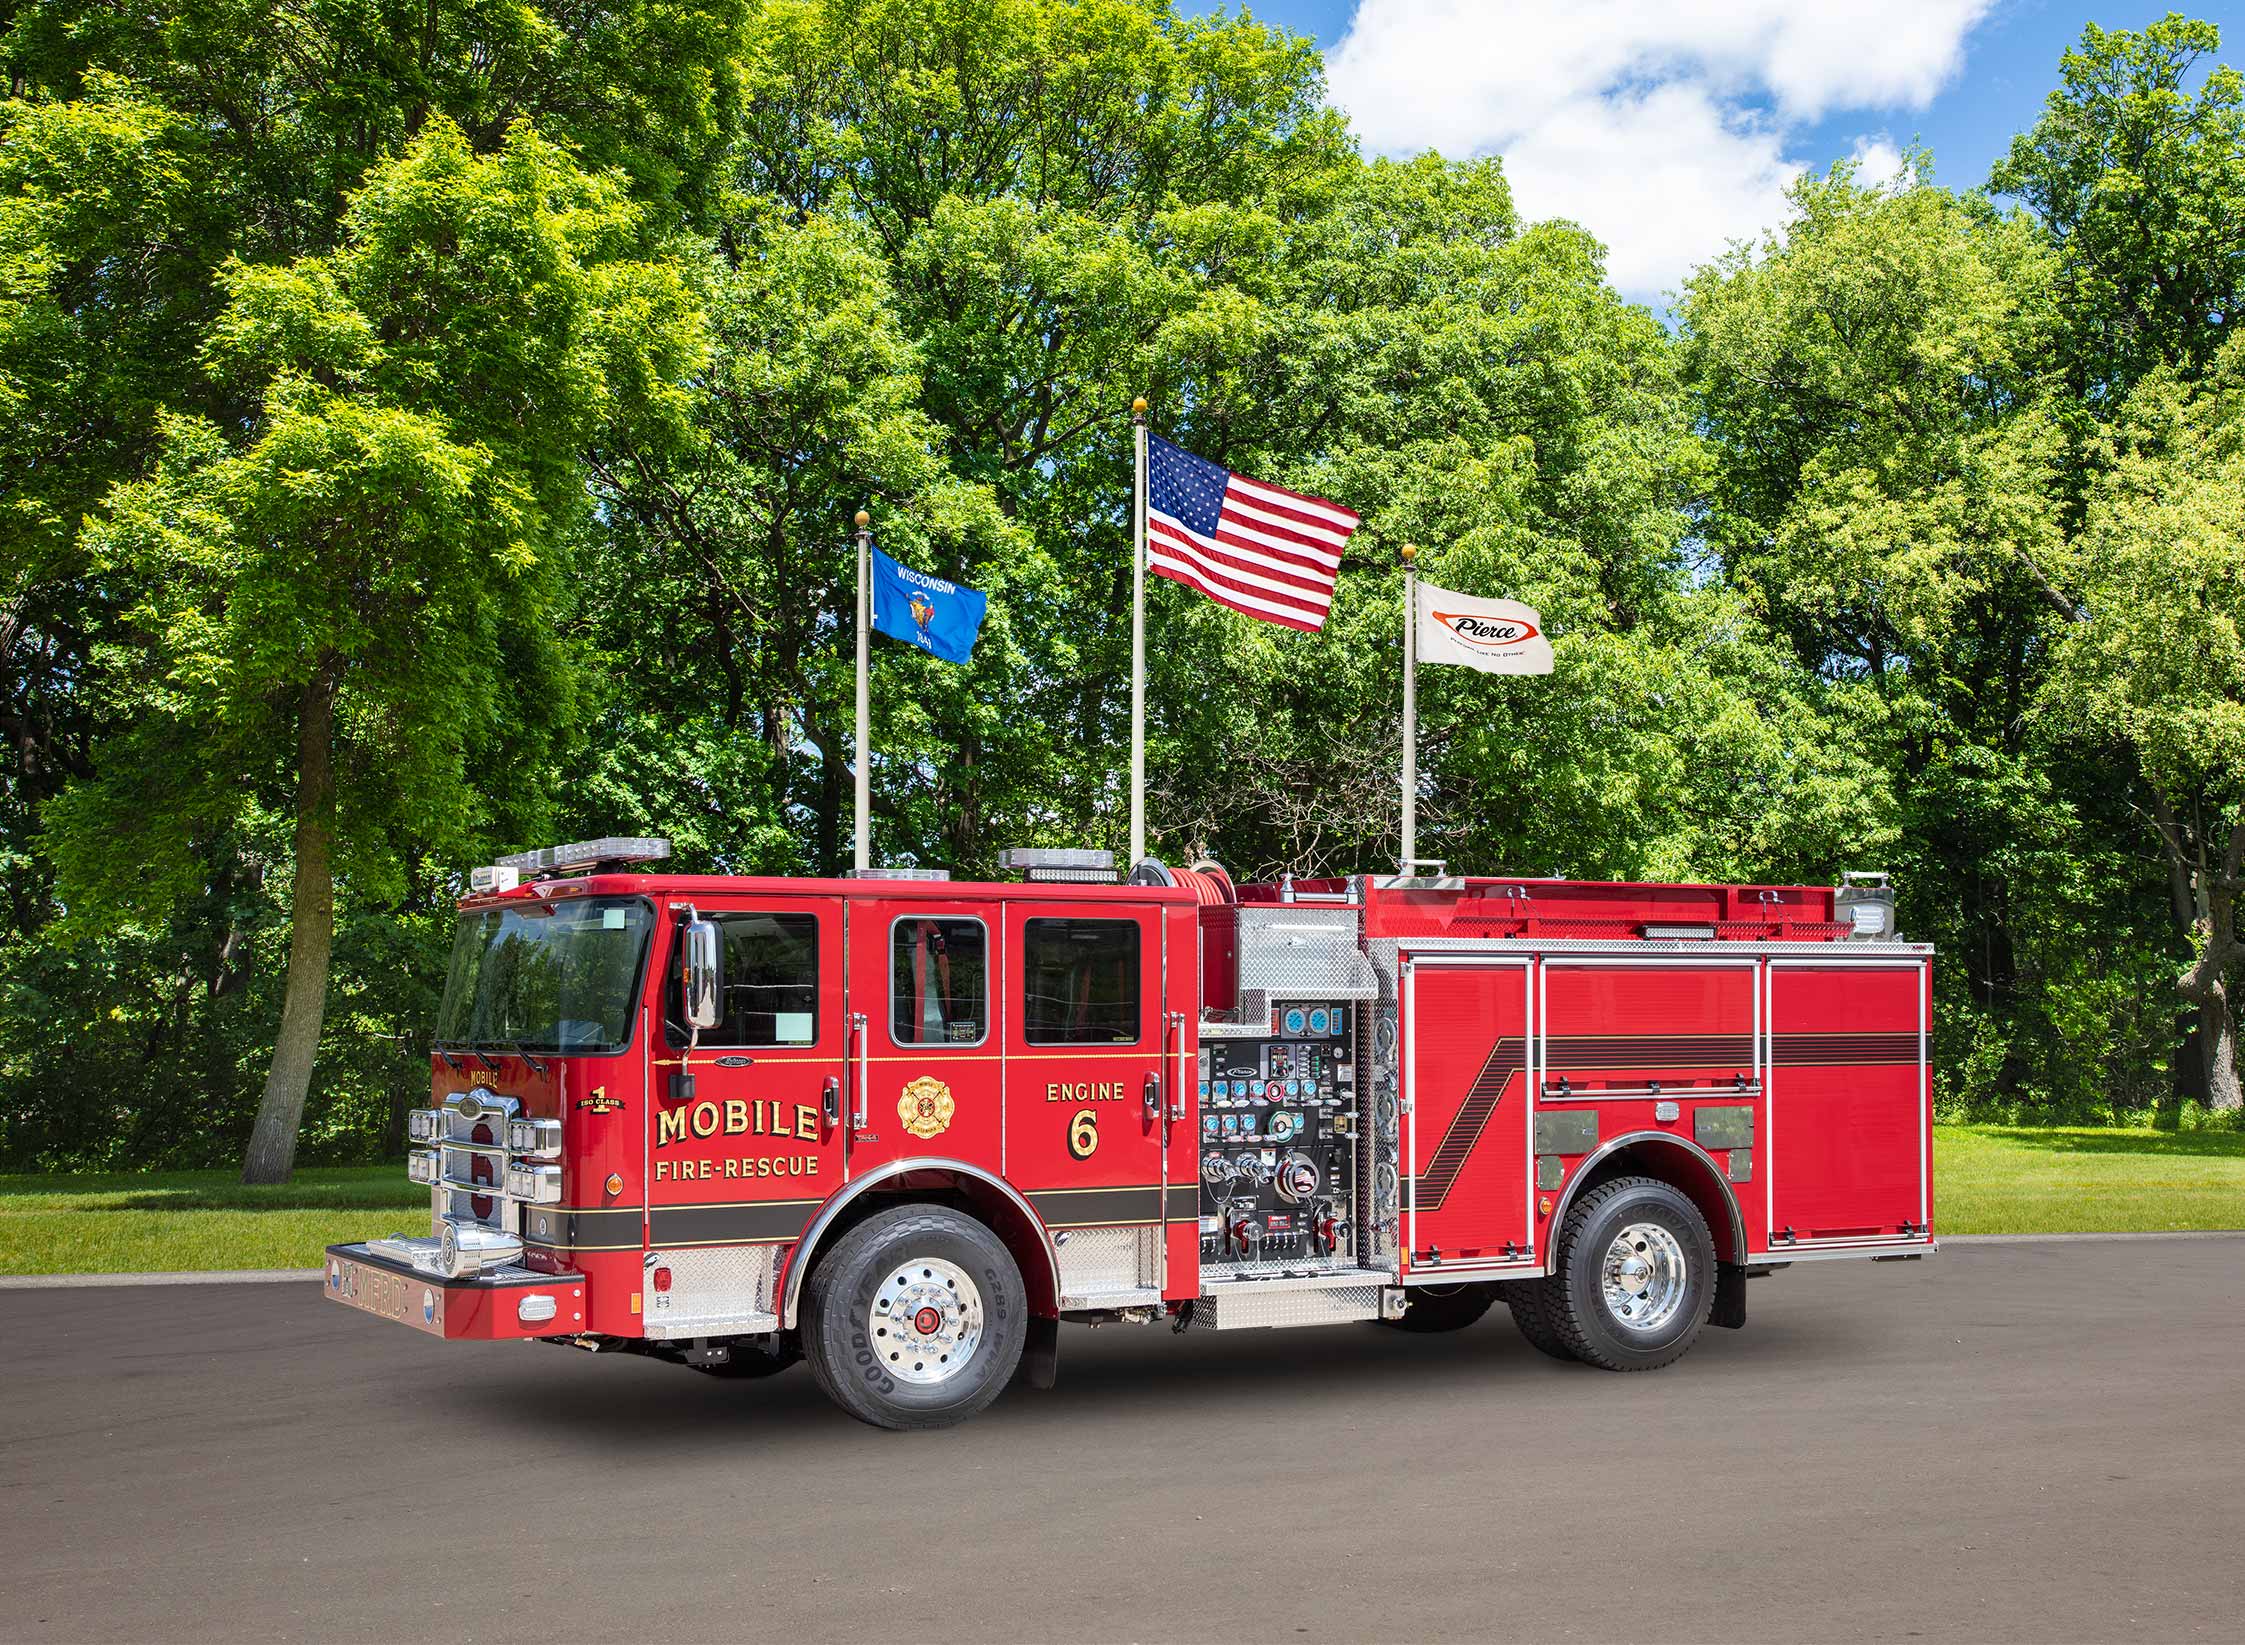 Mobile Fire Rescue Engine 18 Mobile Fire Rescue Engine 18